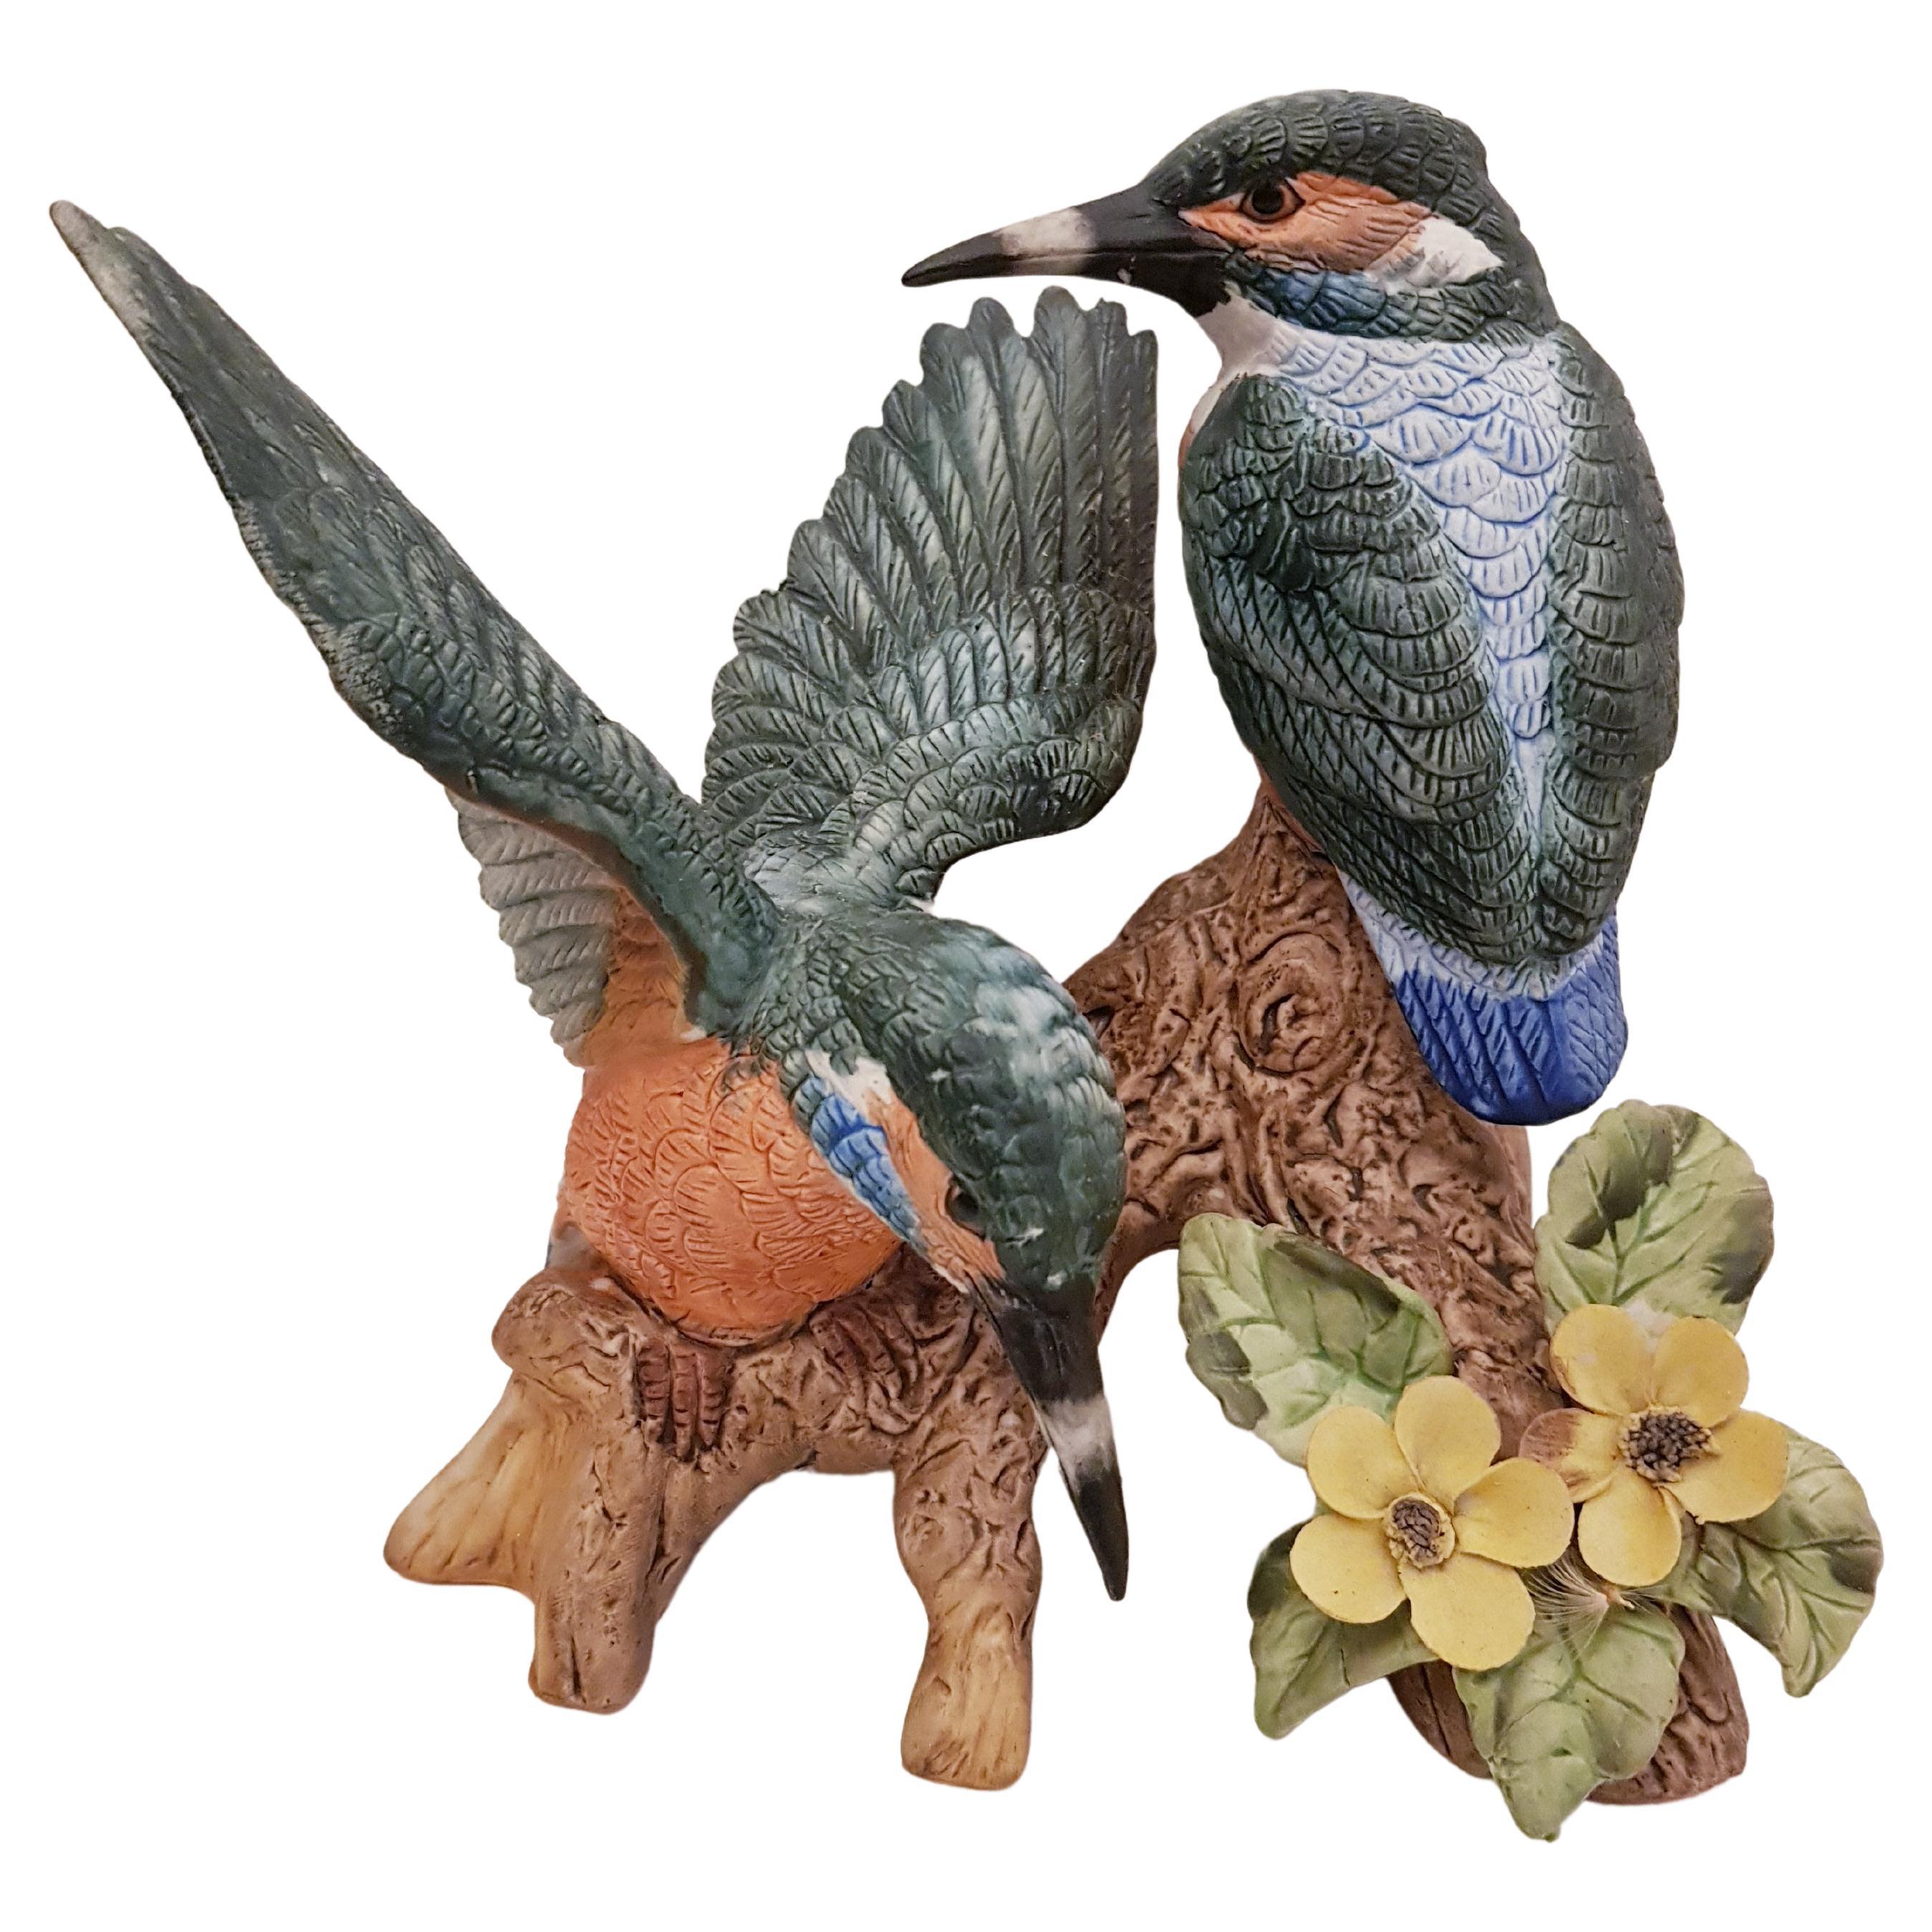 Vitange Capodimonte Ceramic Birds Sculpture For Sale